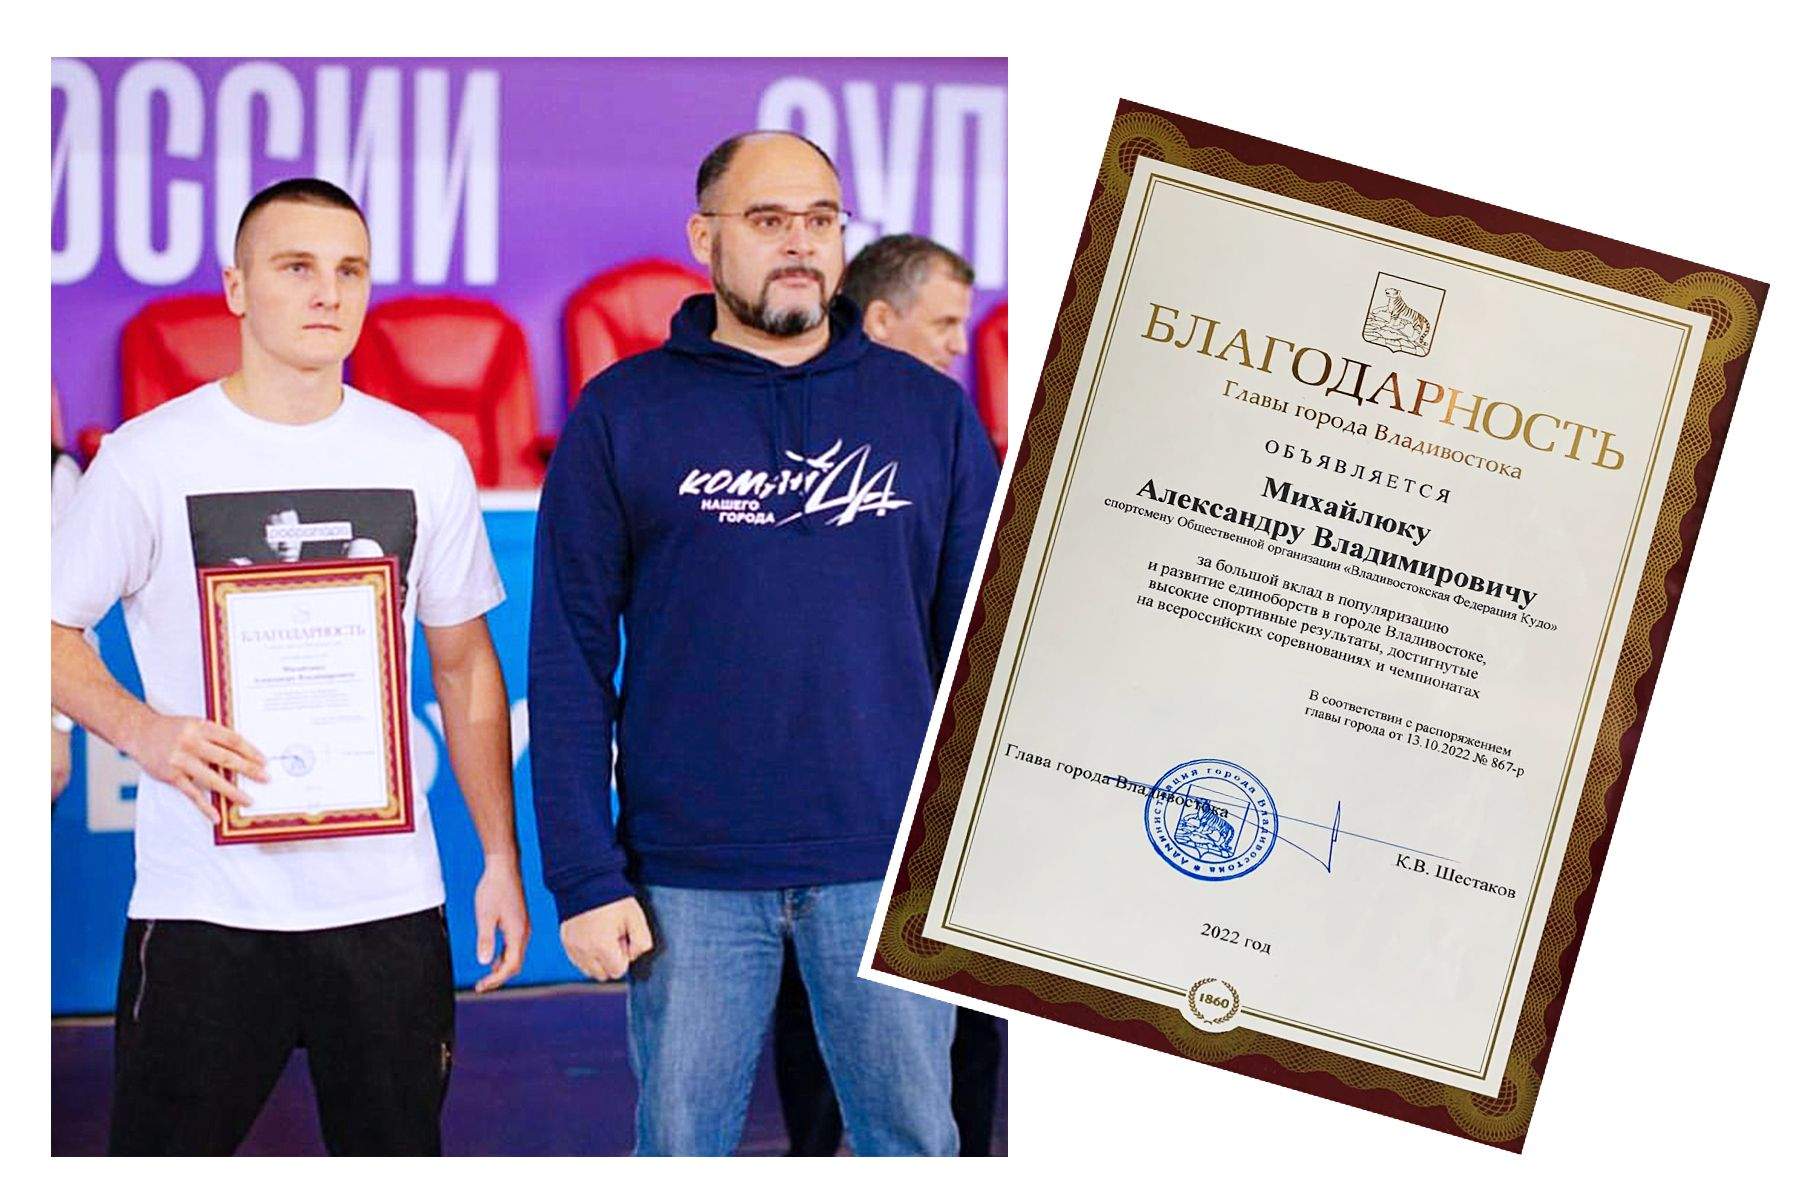 Студент ВВГУ отмечен Благодарностью главы Владивостока за высокие спортивные результаты